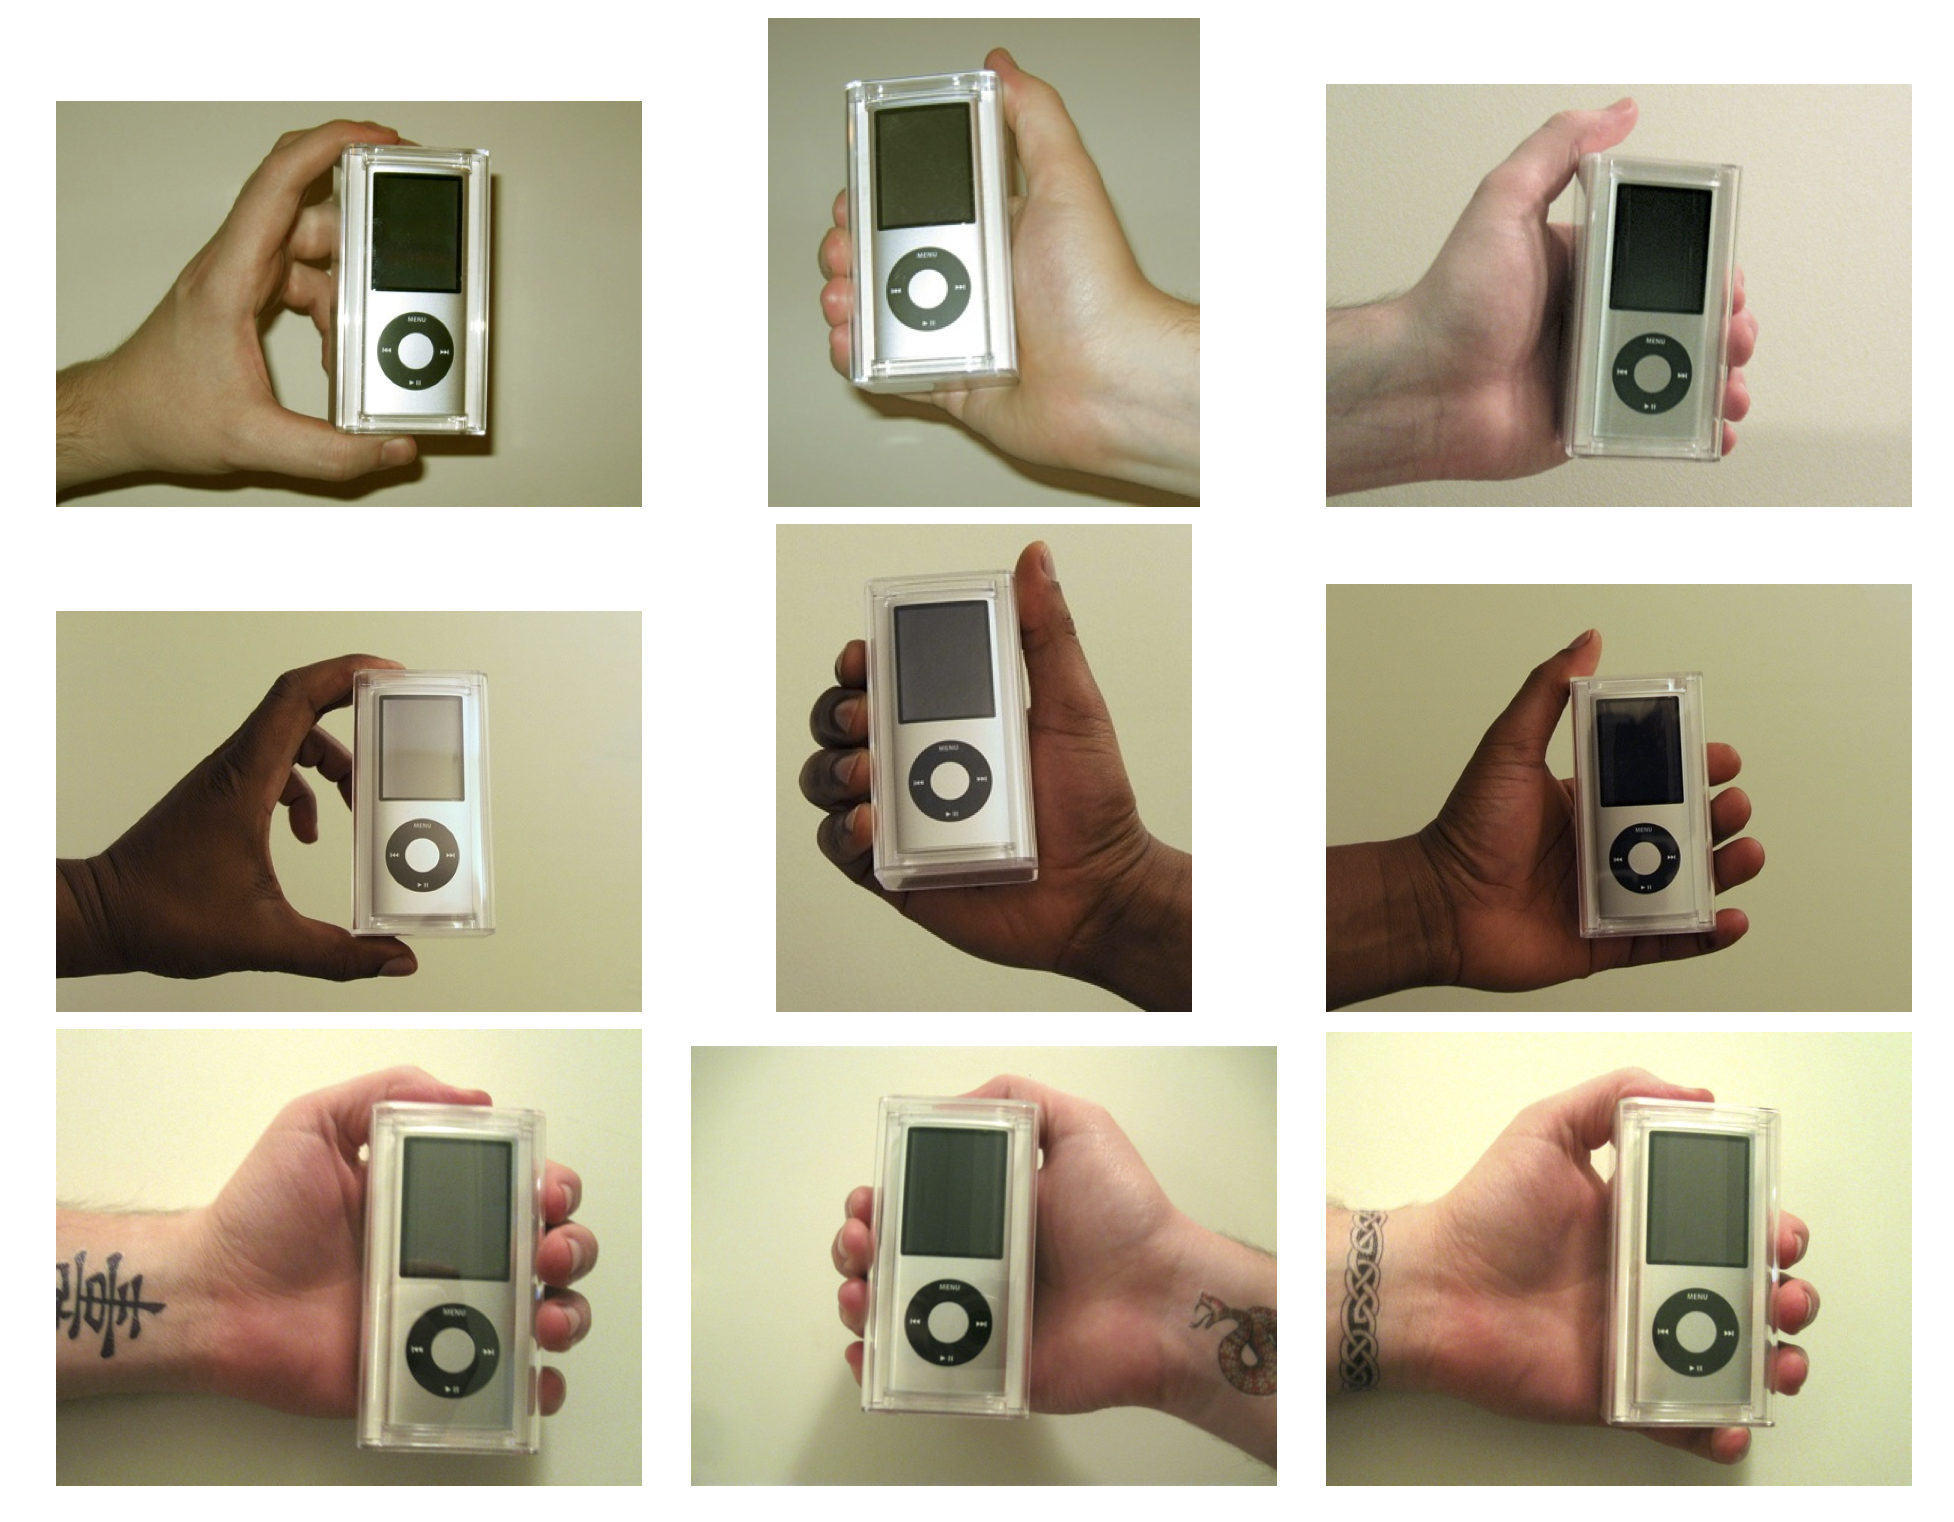 Hình 4.12: Hands dùng trong thí nghiệm của Doleac và Stein (2013). máy nghe nhạc iPod đã được bán bởi người bán hàng với các đặc tính khác nhau để đo lường phân biệt đối xử trong một thị trường trực tuyến.